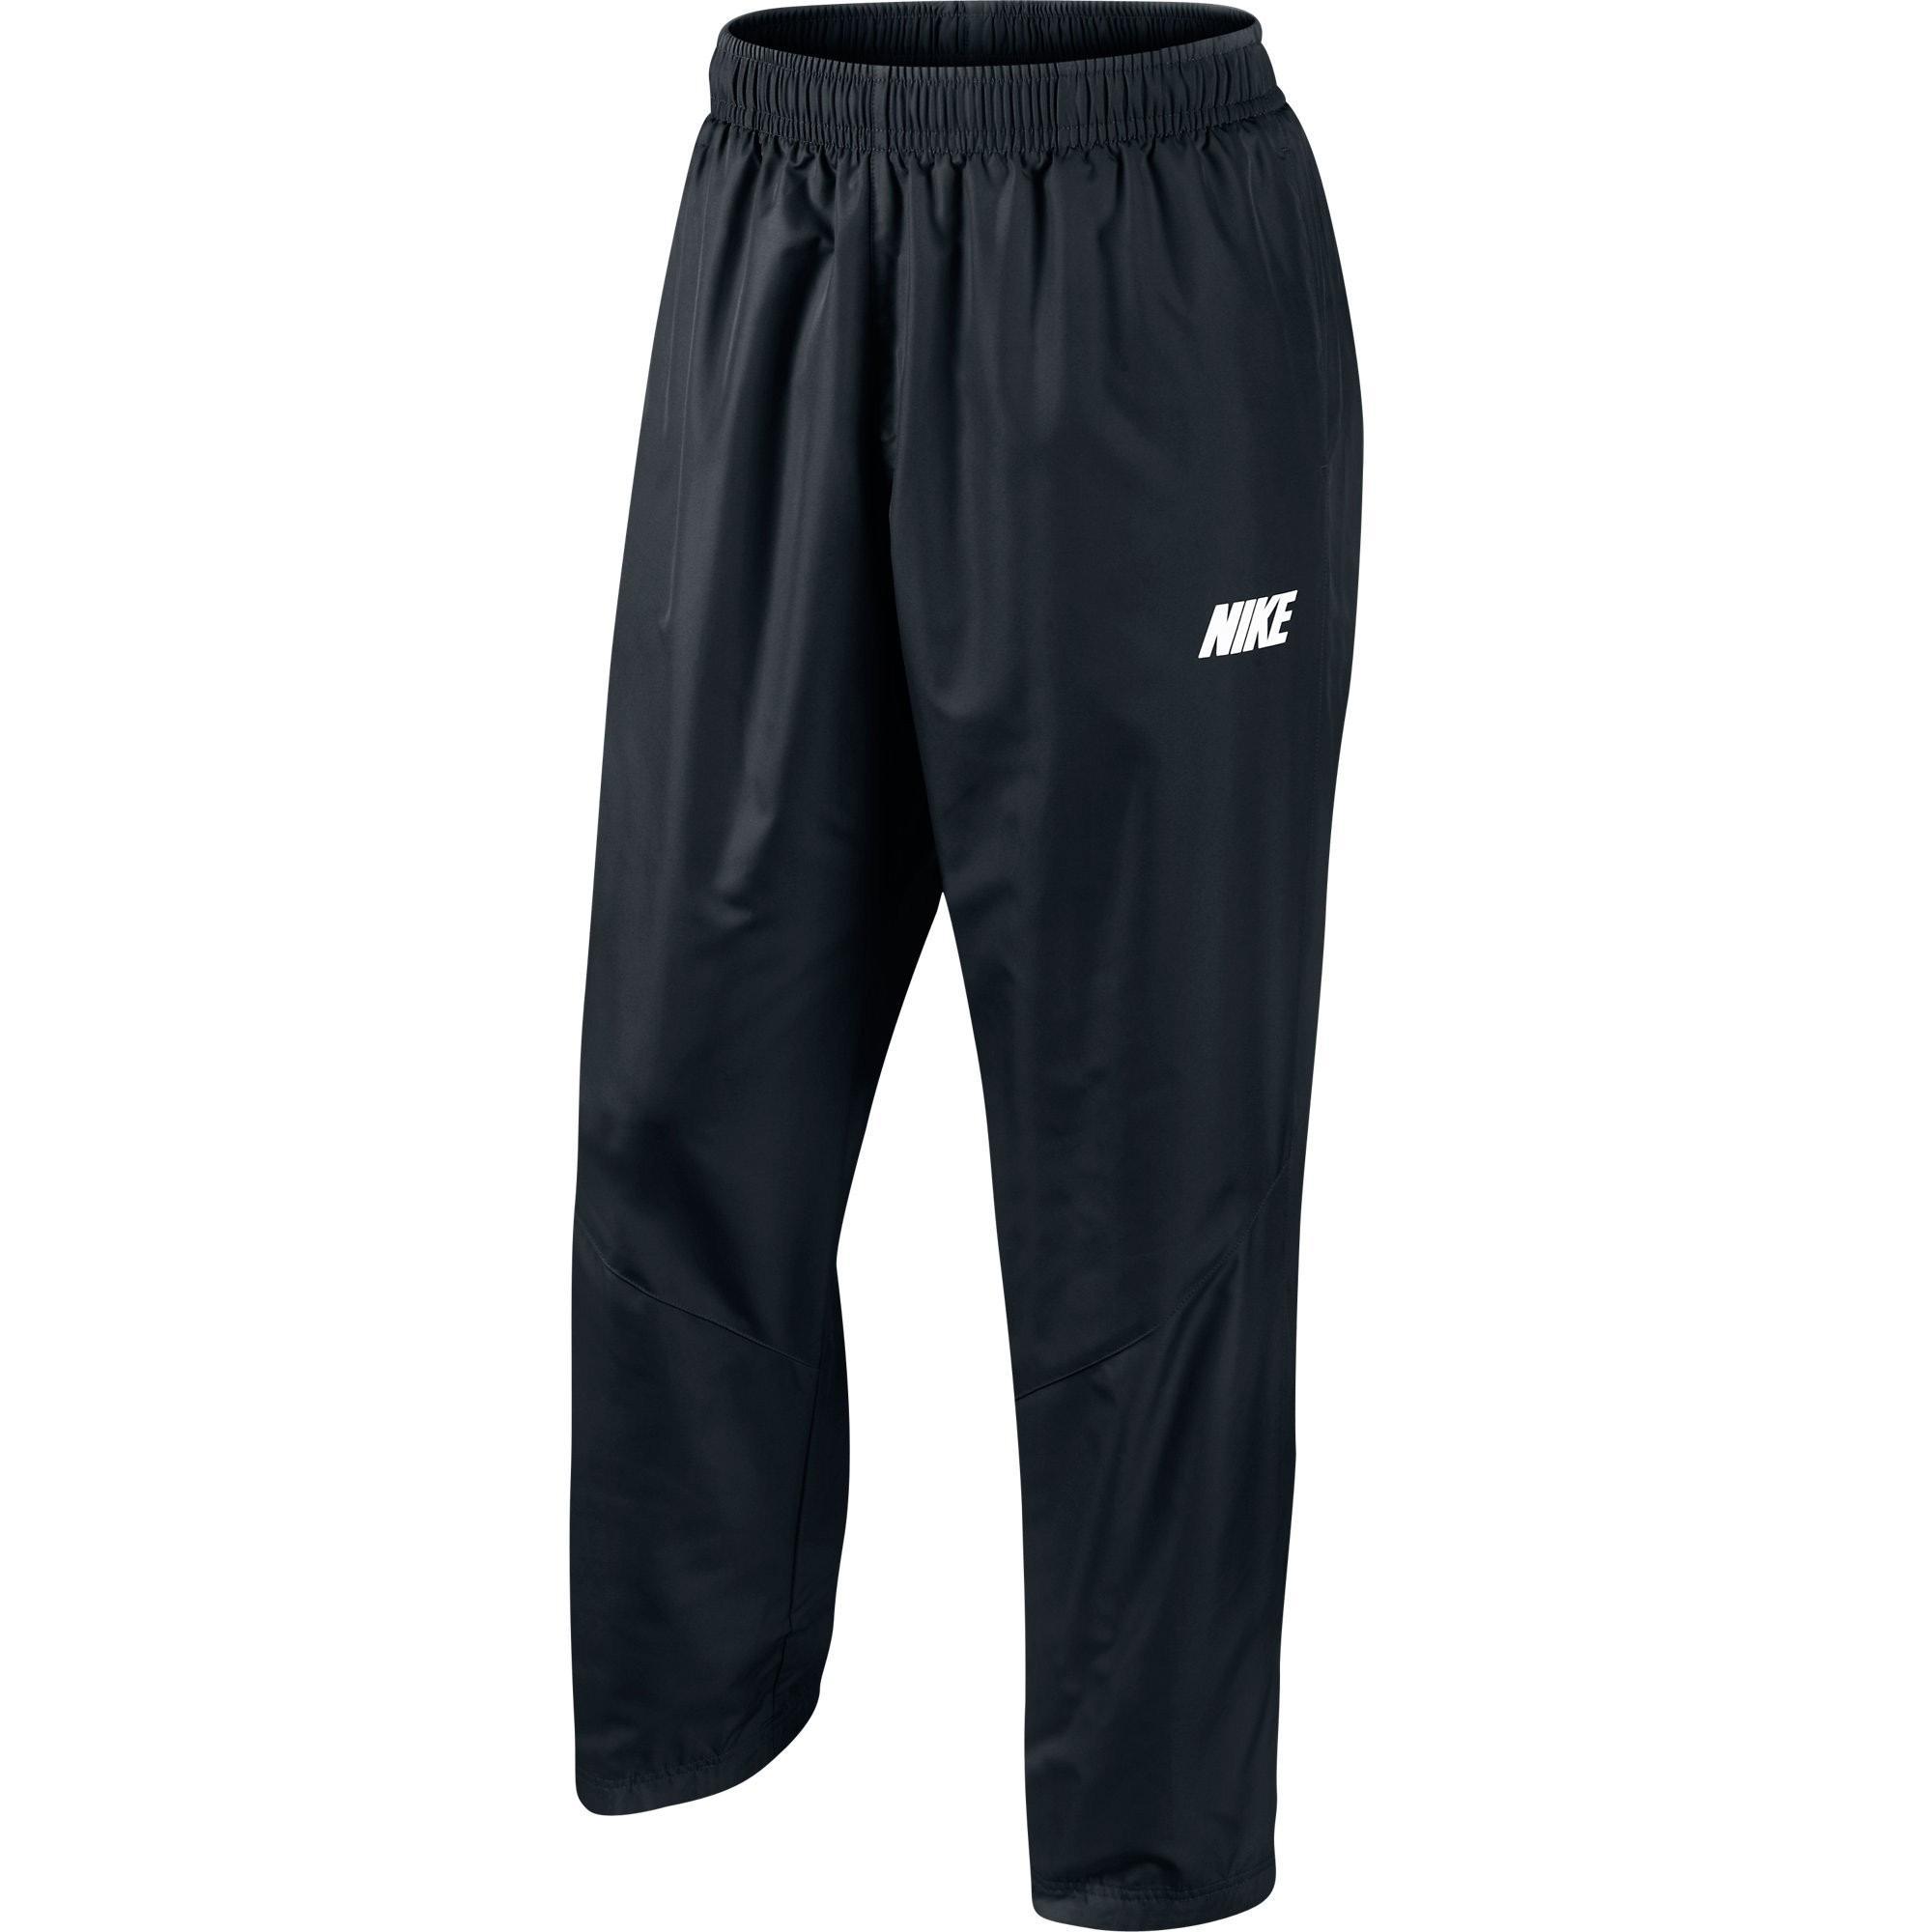 Nike Season OH Pants - Black/White - Tennisnuts.com